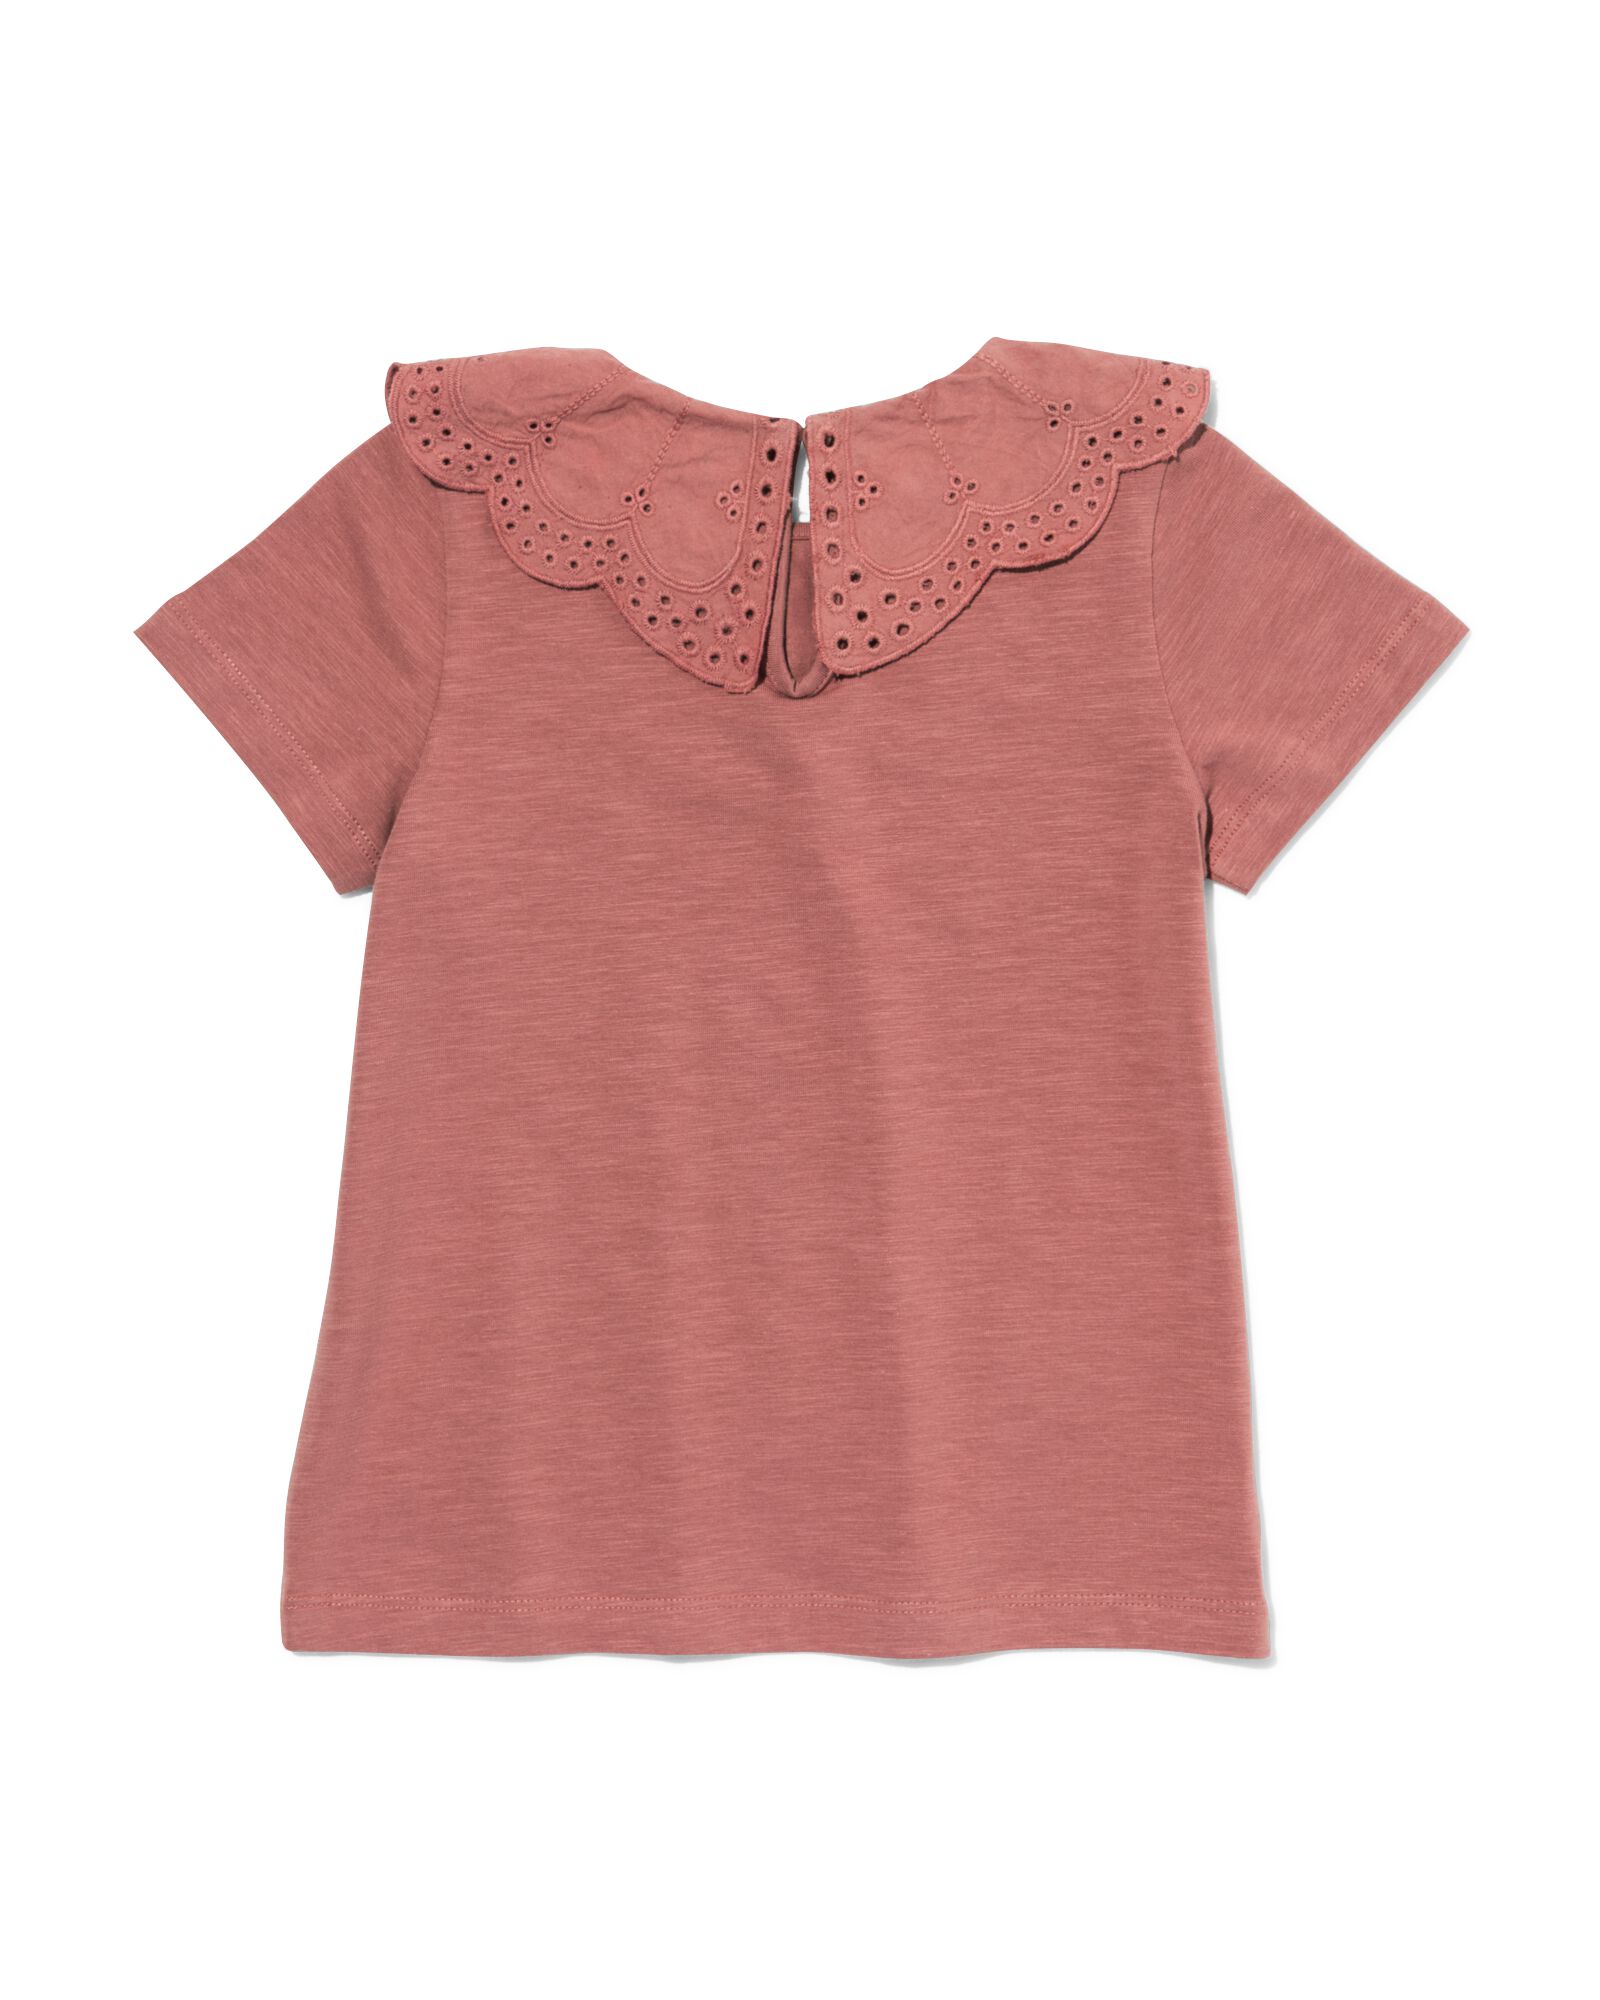 t-shirt enfant avec col en broderie roze 122/128 - 30874050 - HEMA